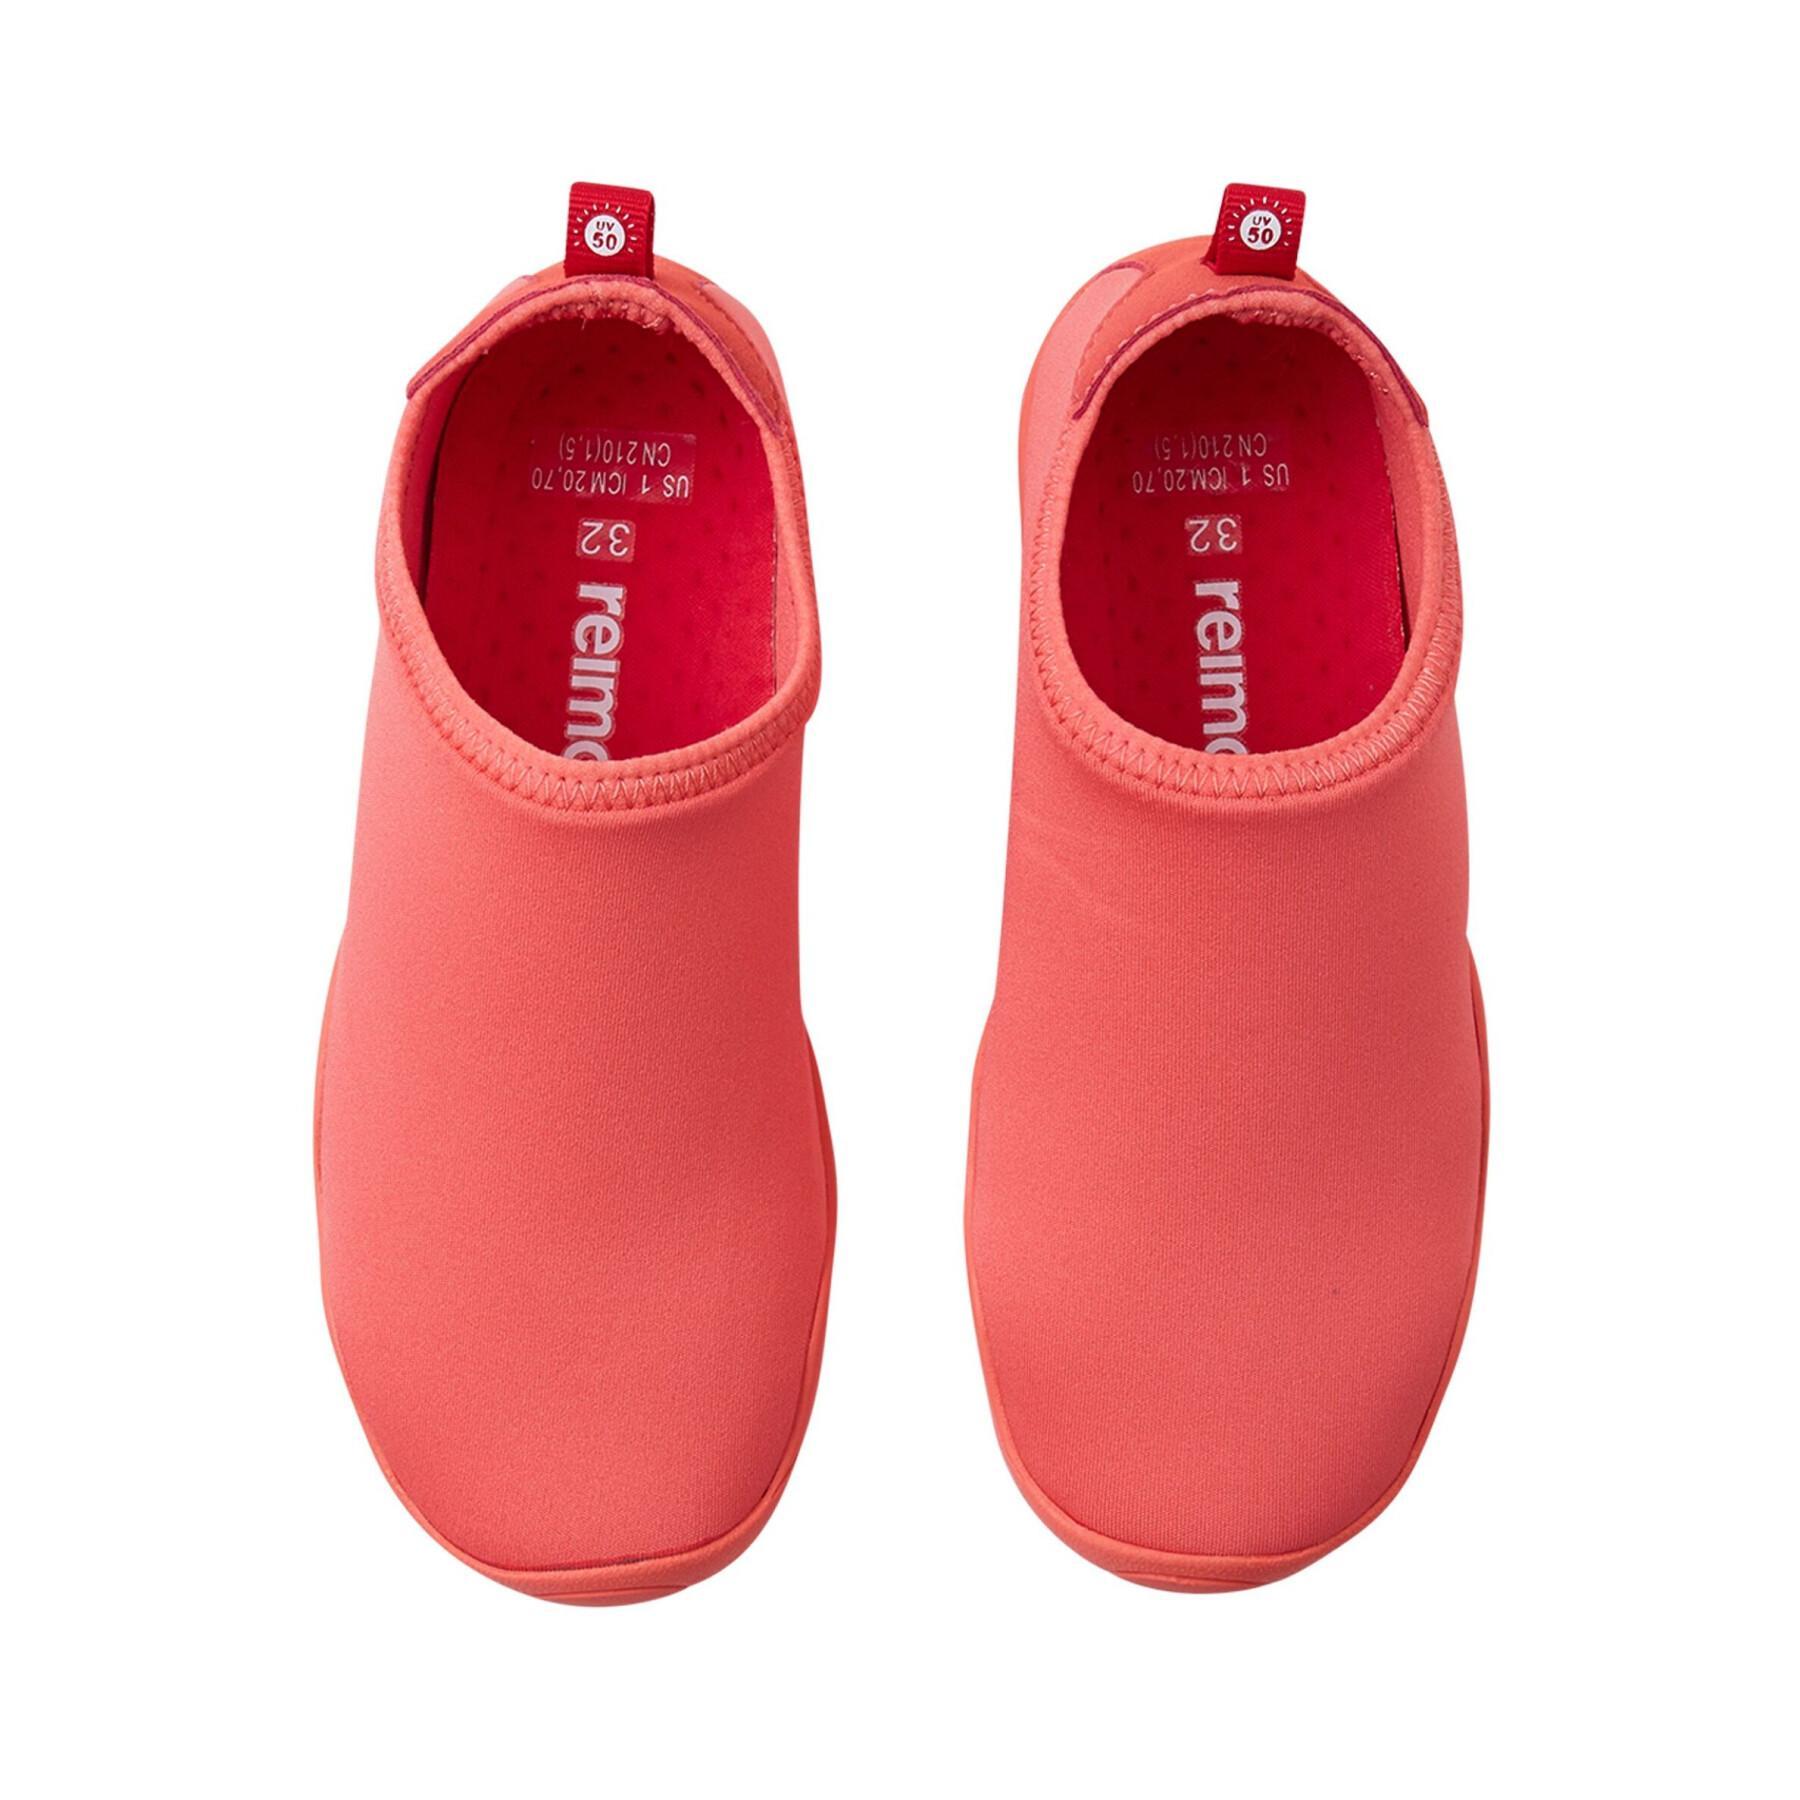 Children's aquatic shoes Reima Lean